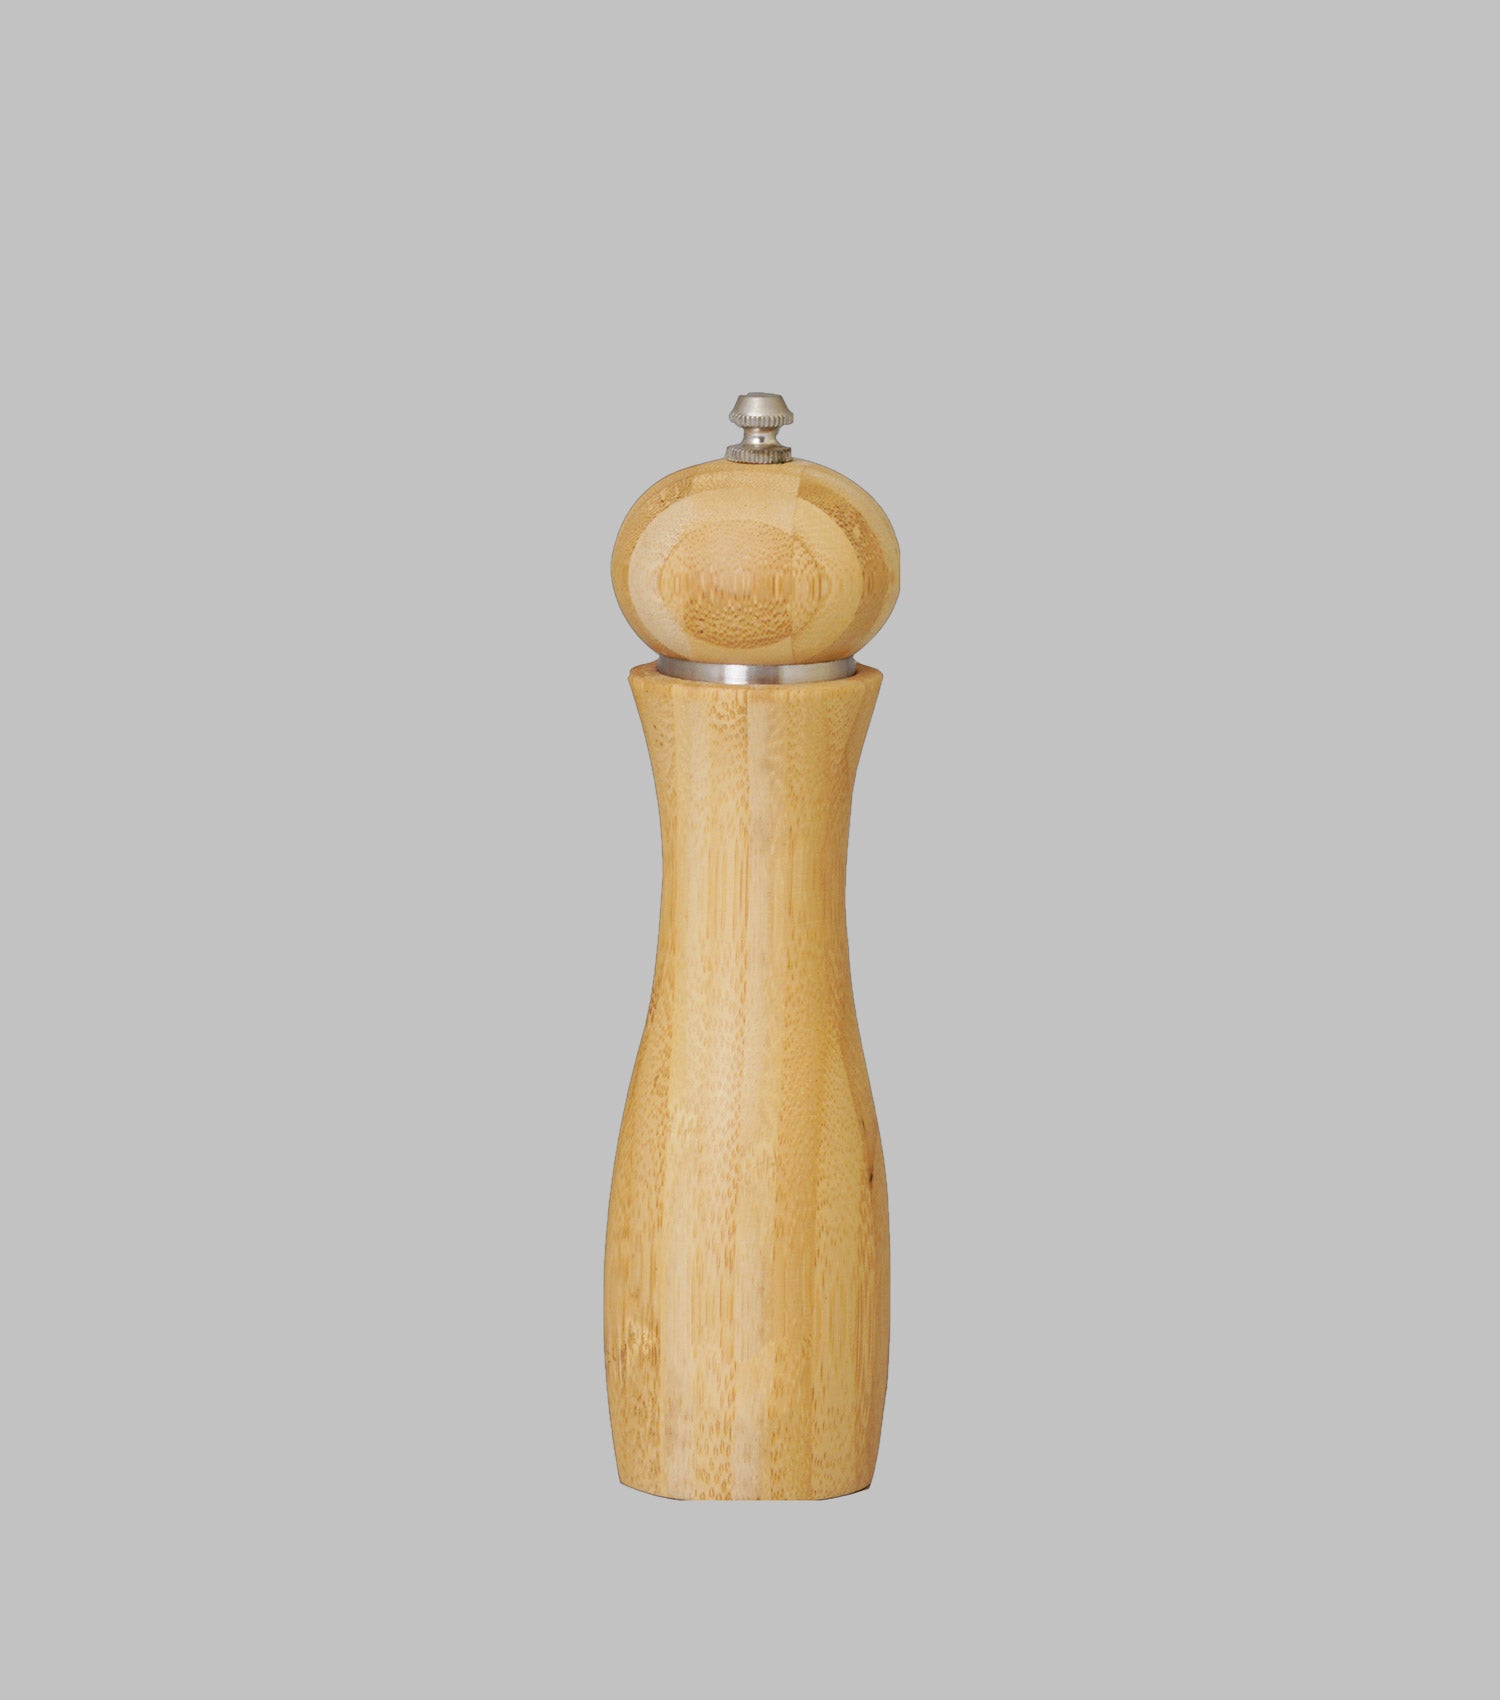 Salt and pepper grinder wooden